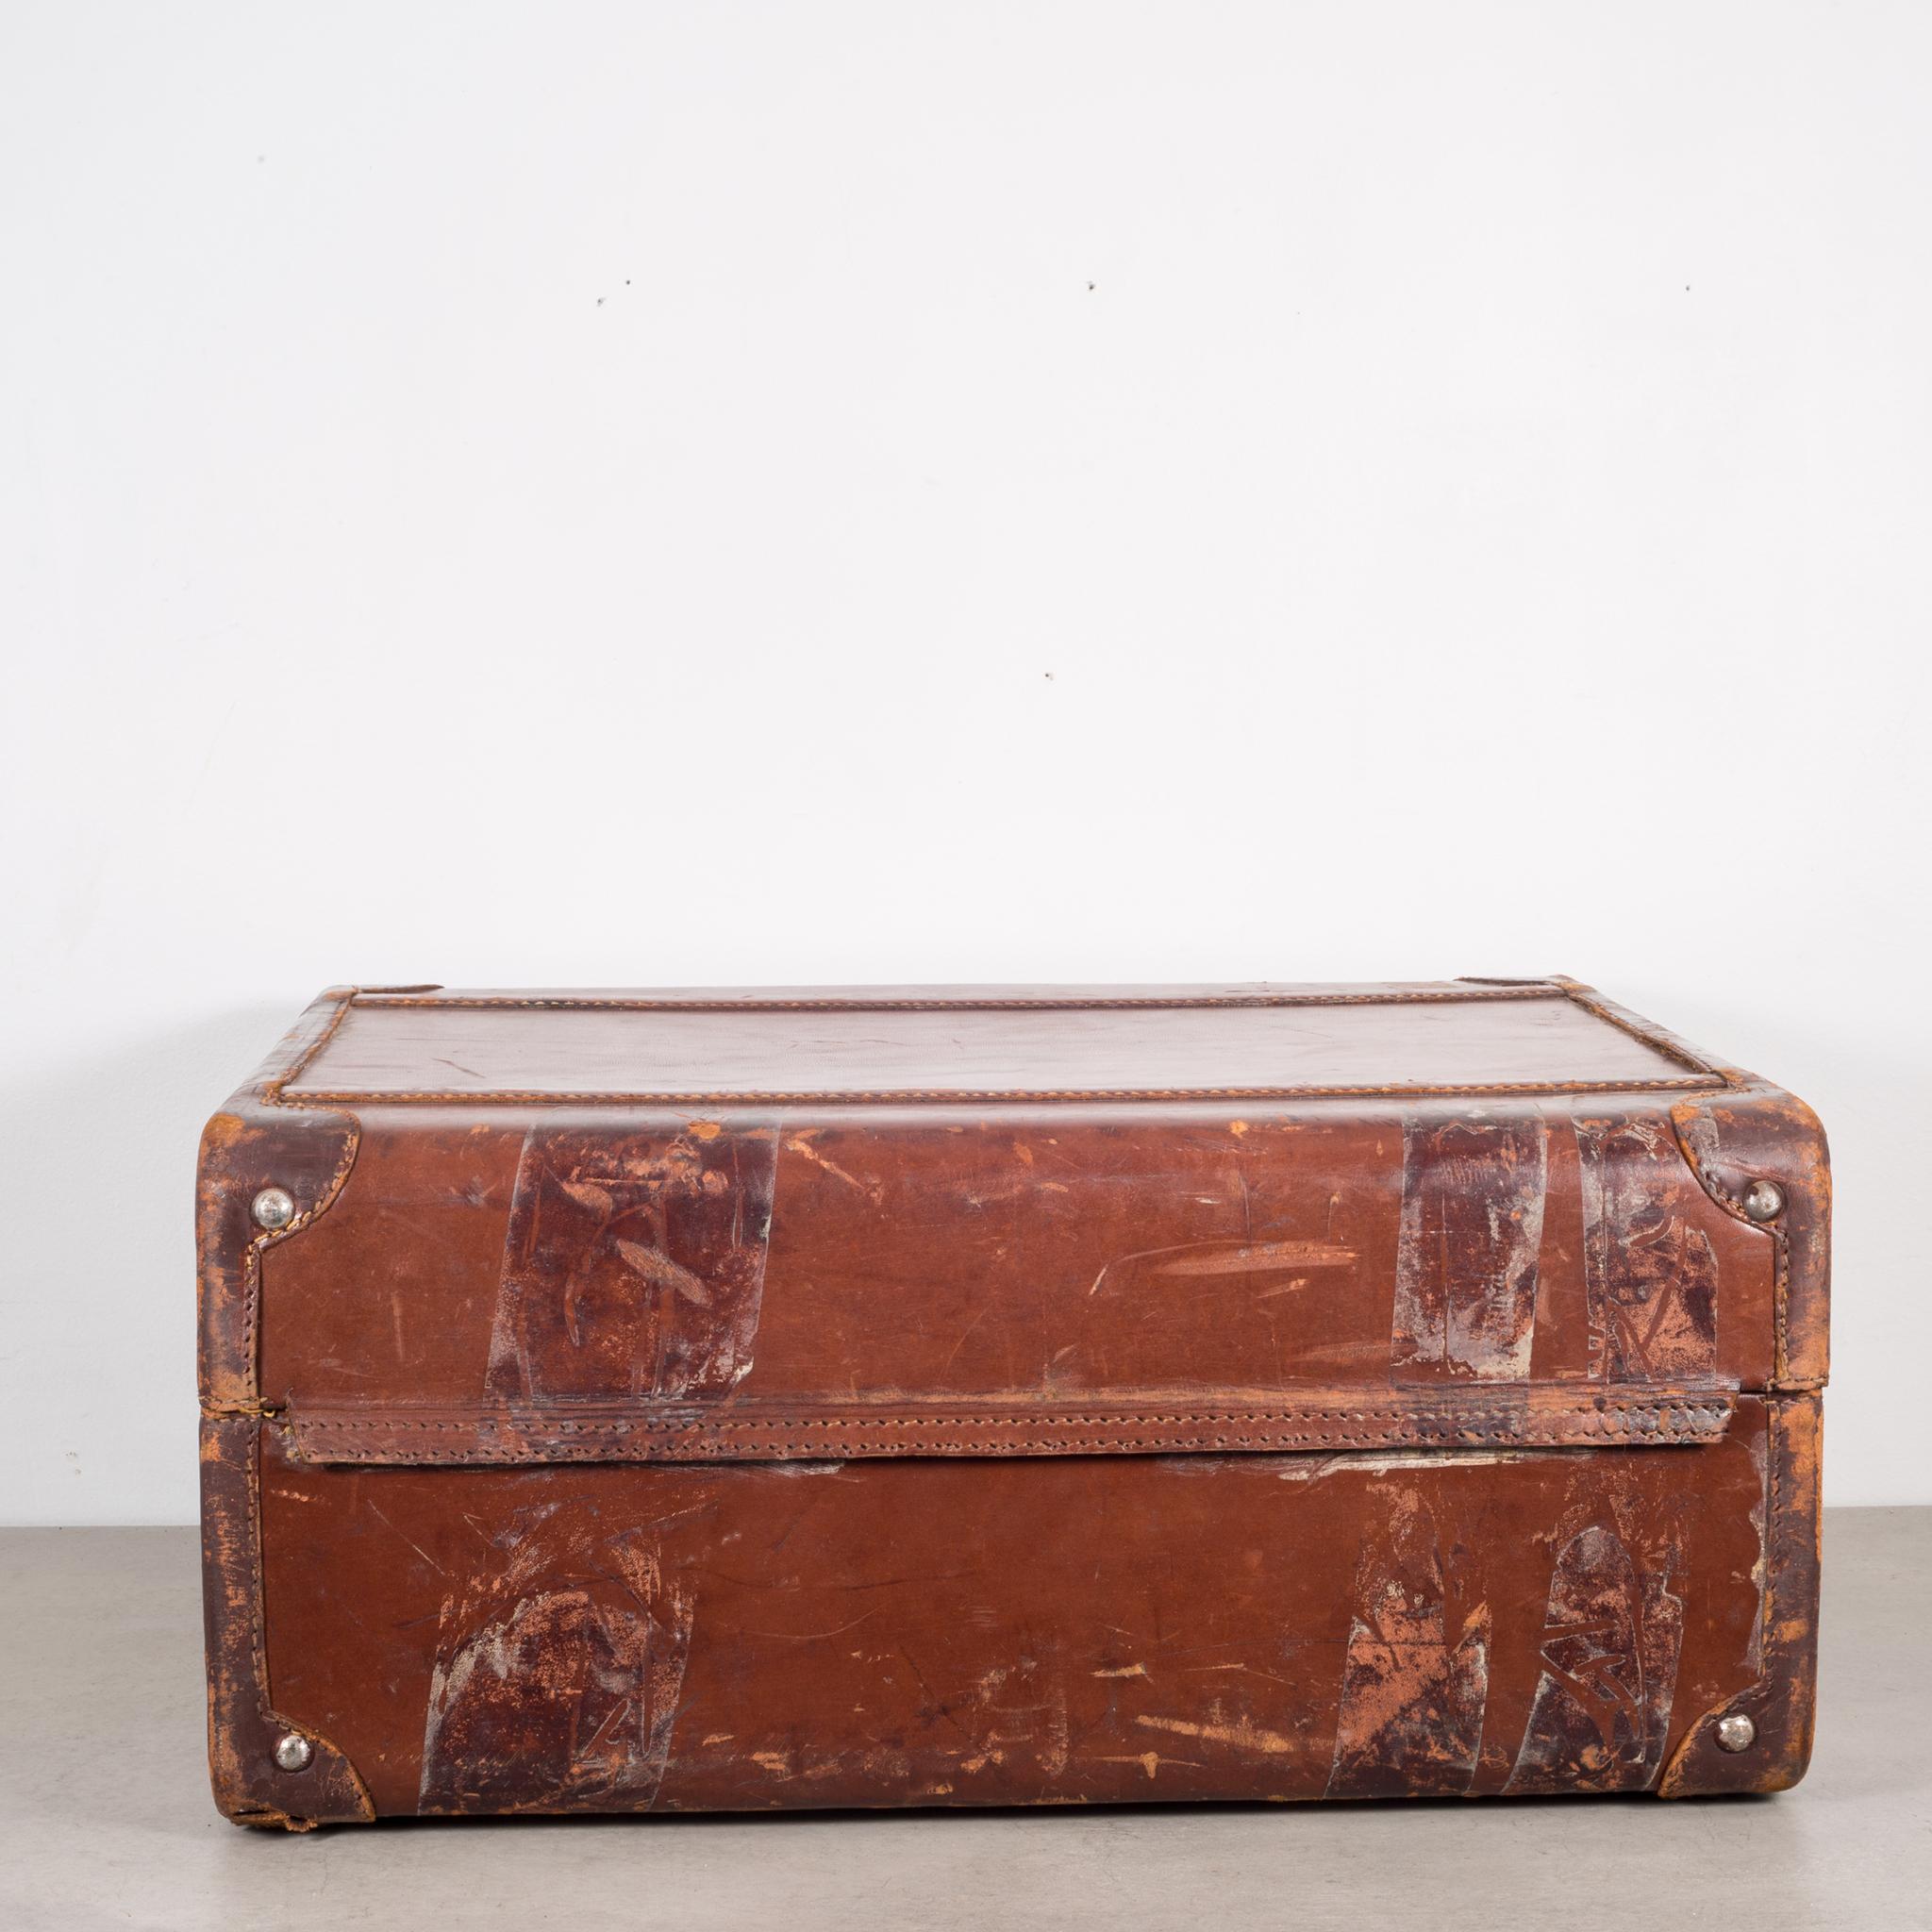 20th Century Monogrammed Medium Leather Suitcase, circa 1940